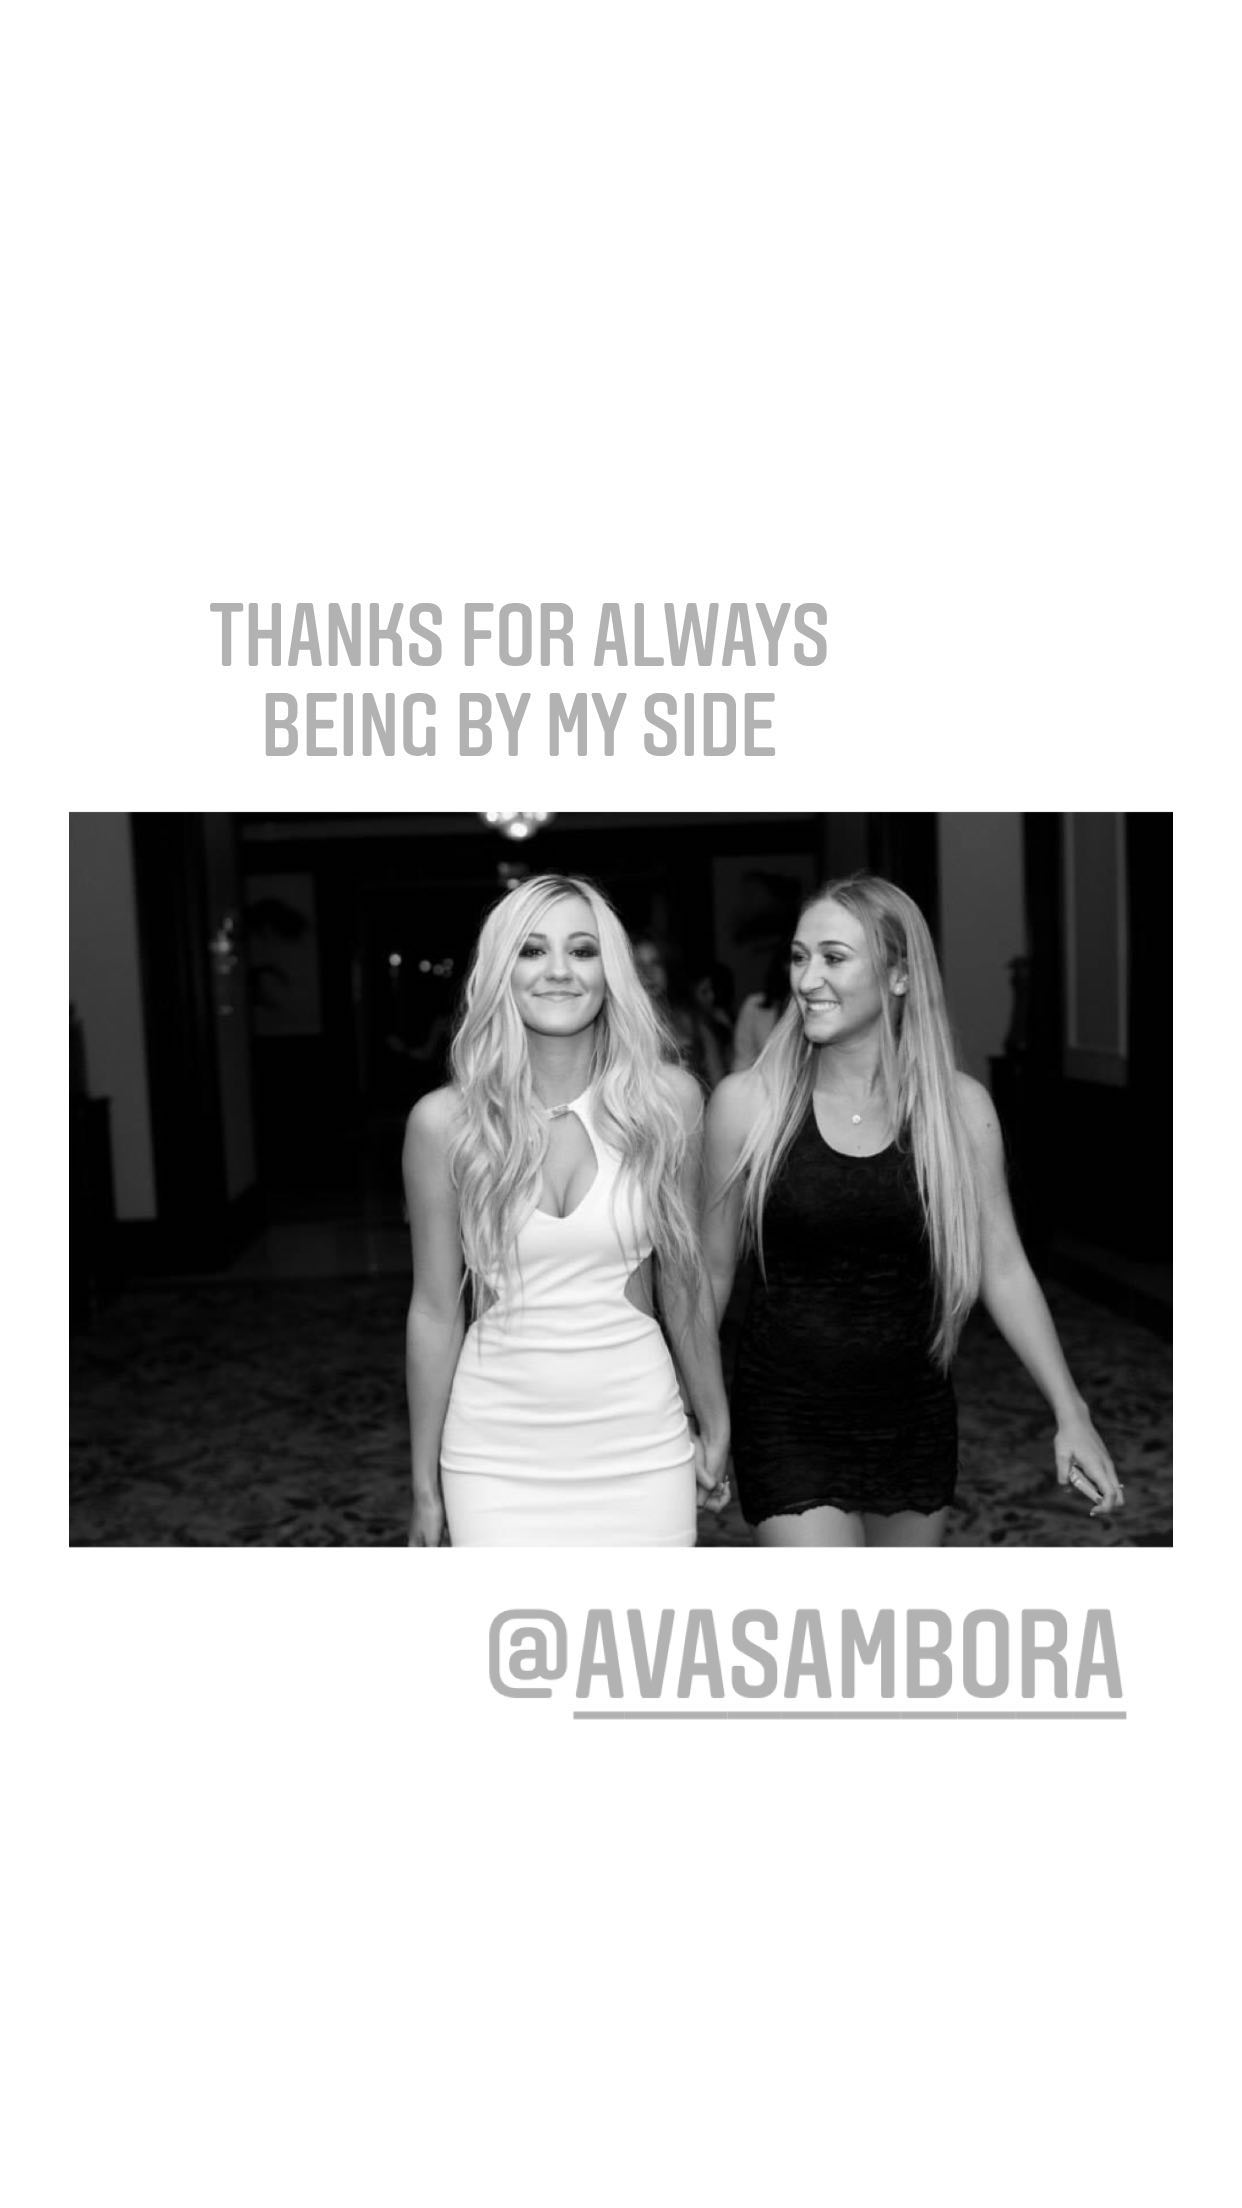 Ava Sambora â€“ Social media